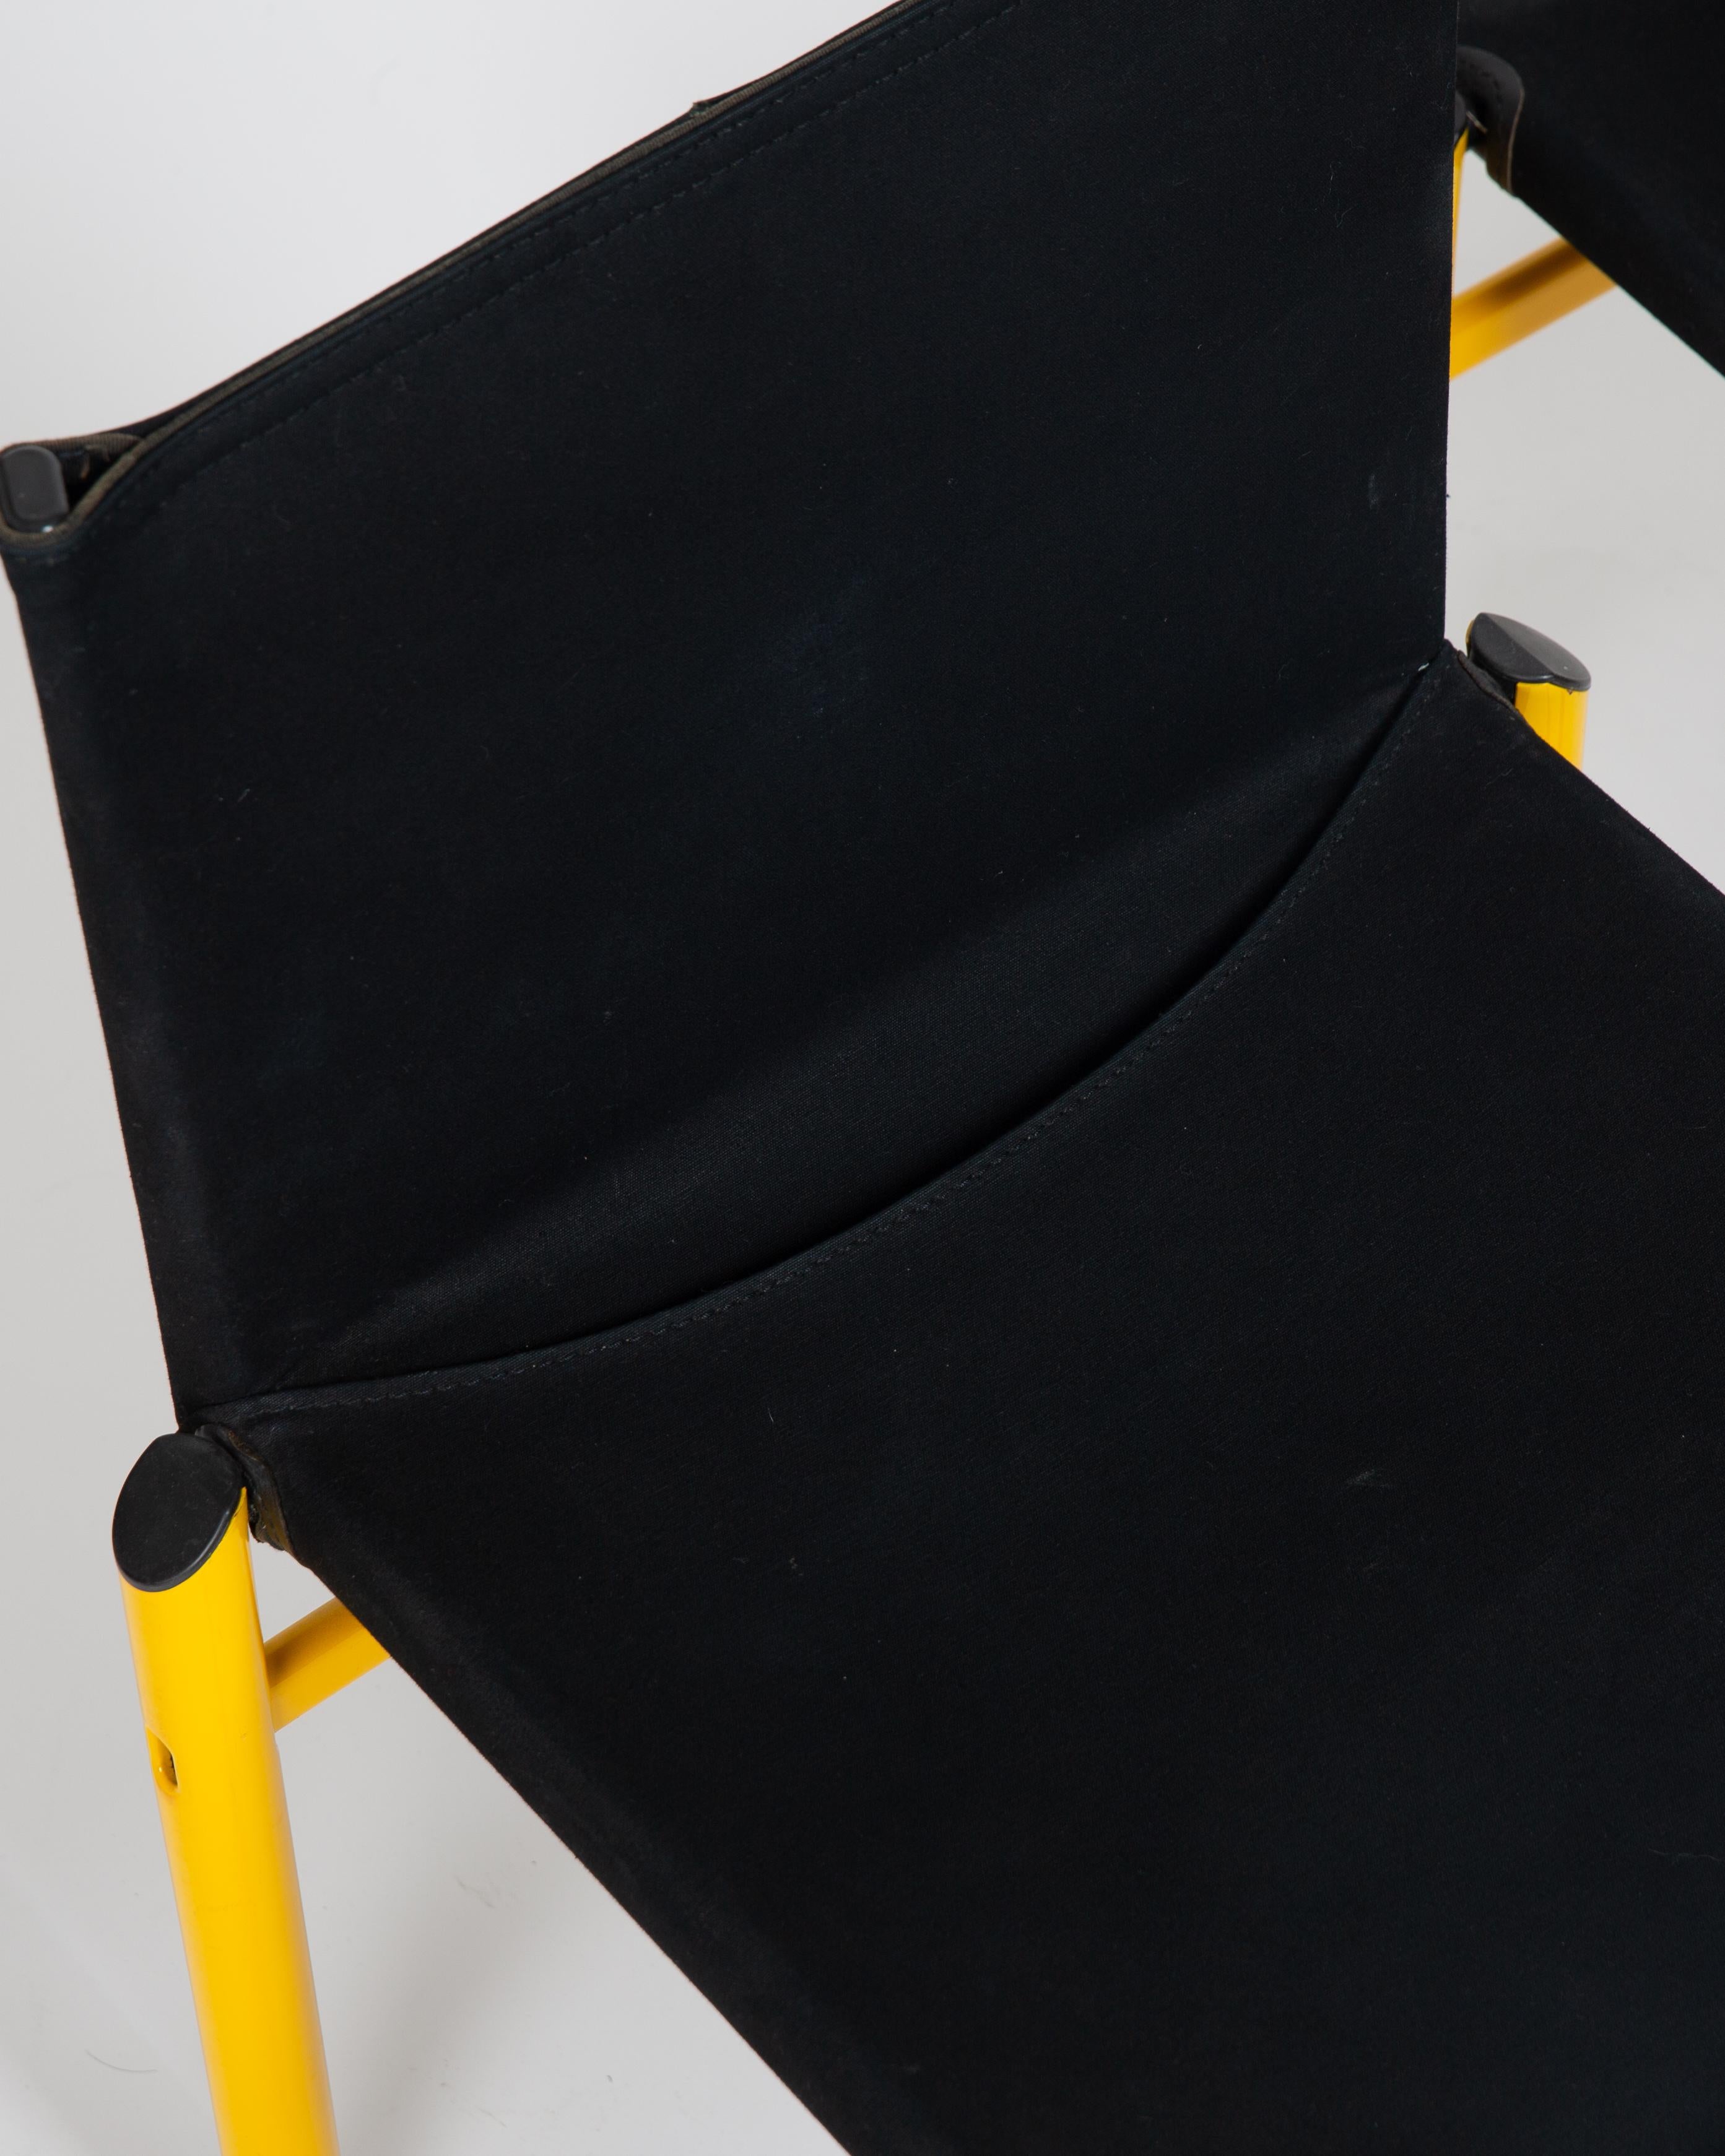 Italian Tobia Scarpa Mastro Chairs for Molteni Pair For Sale